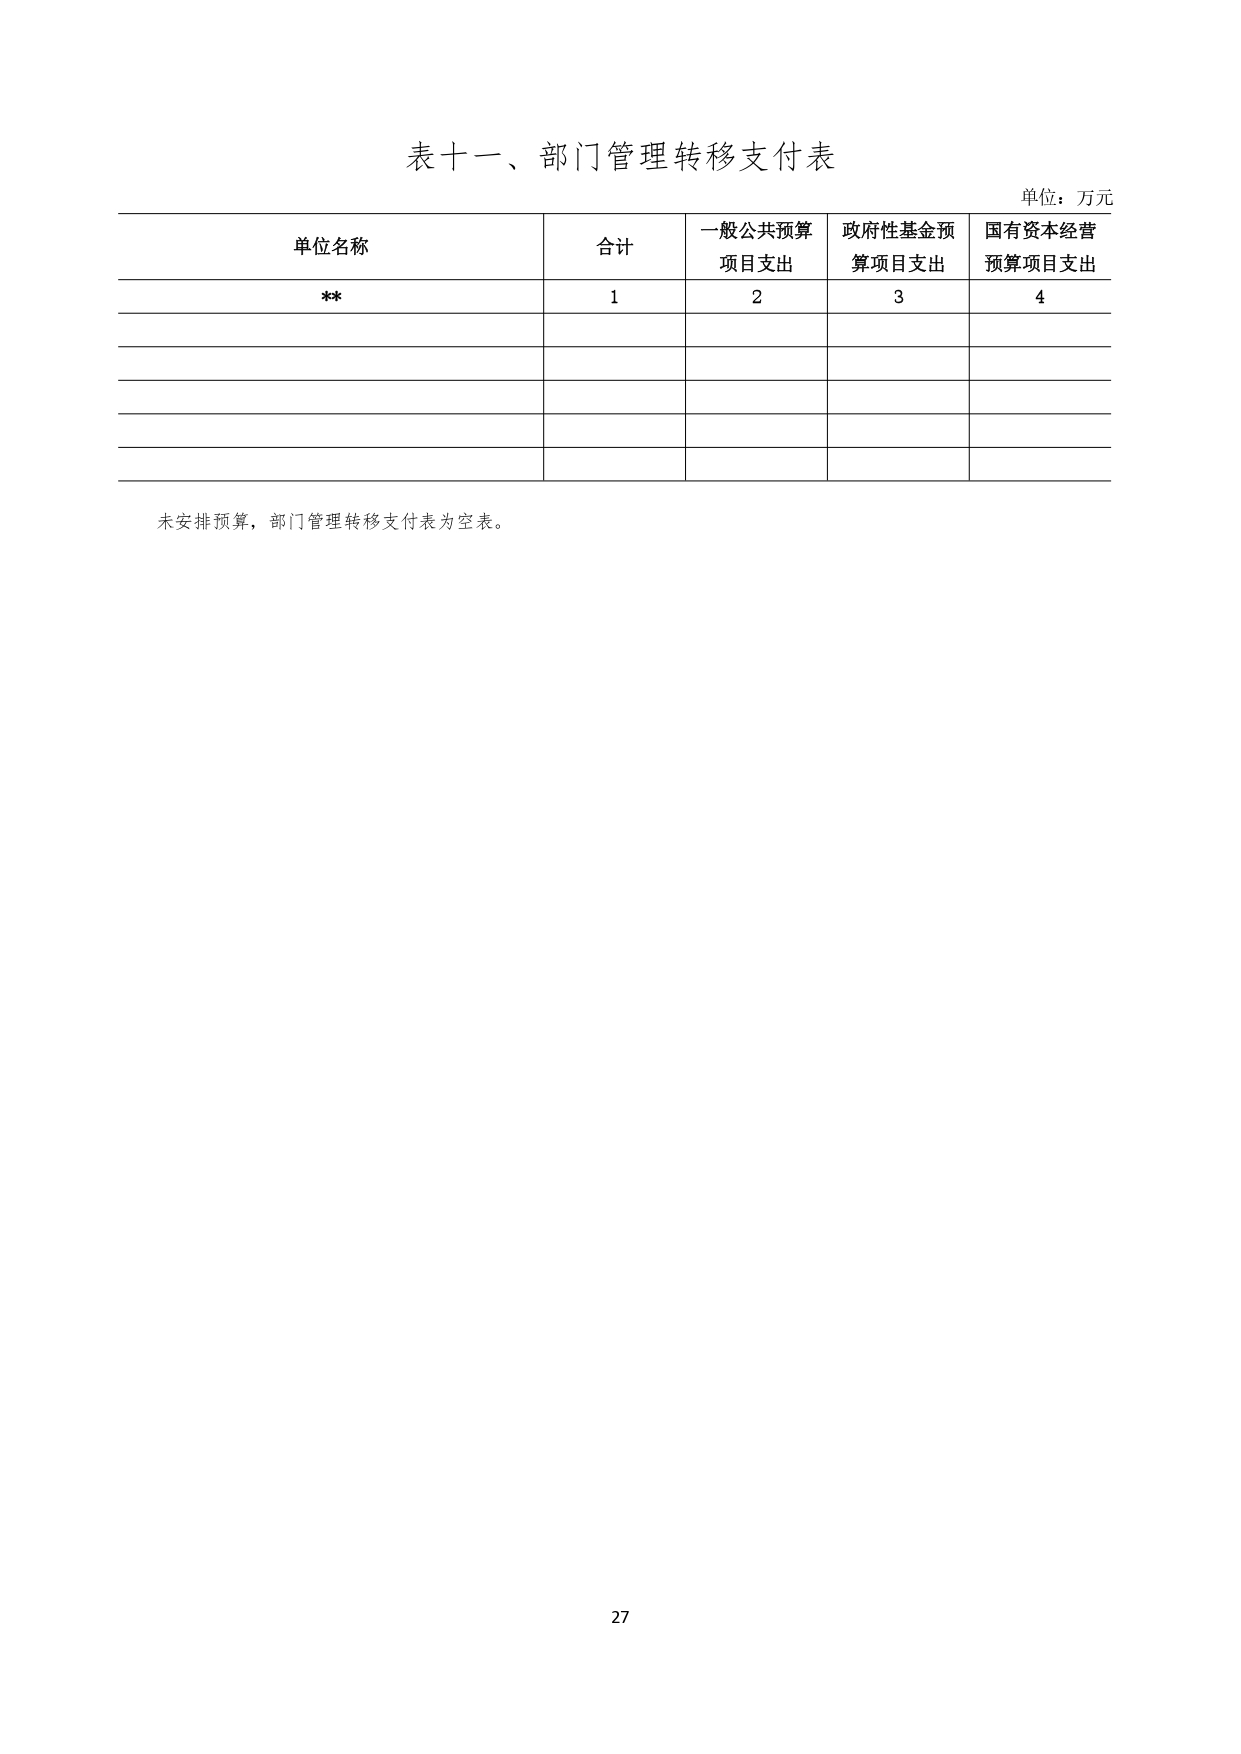 甘肃省广播电视学校2023年单位预算公开报告_page-0028.jpg